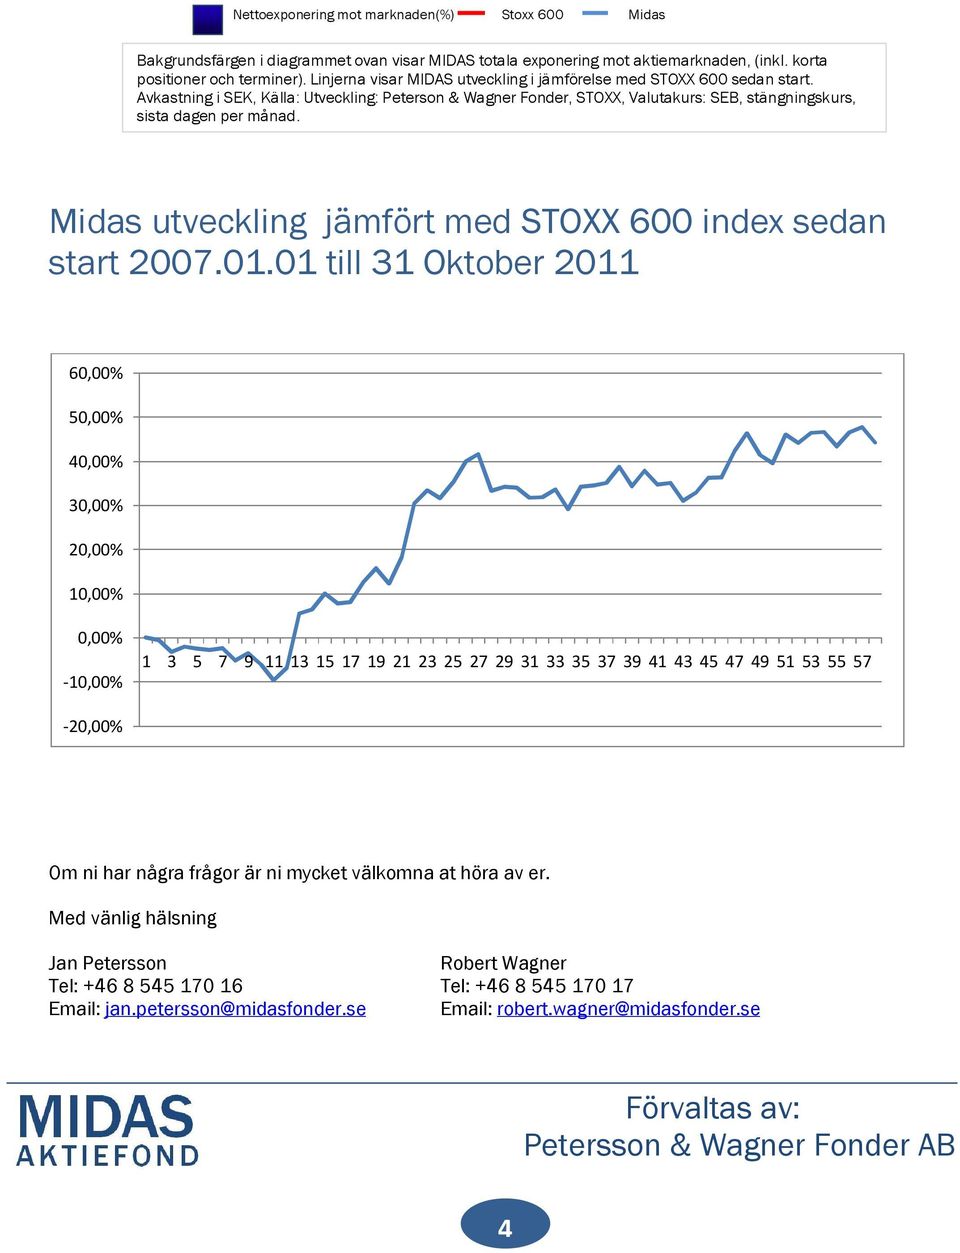 Midas utveckling jämfört med STOXX 600 index sedan start 2007.01.